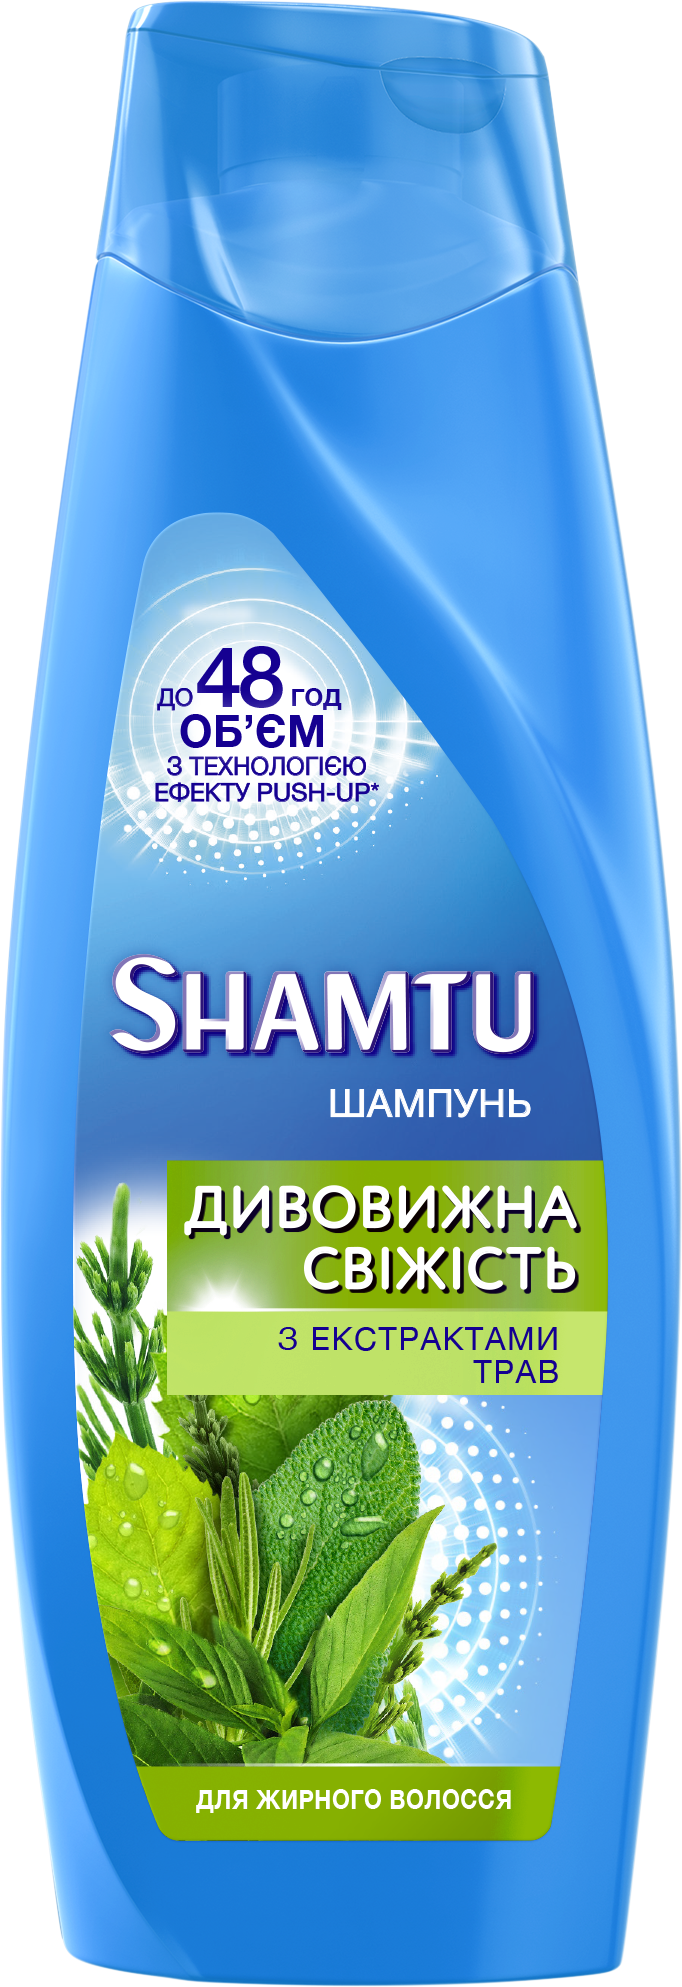 Шампунь Shamtu Глубокое Очищение и Свежесть, с экстрактами трав, для жирных волос, 200 мл - фото 1